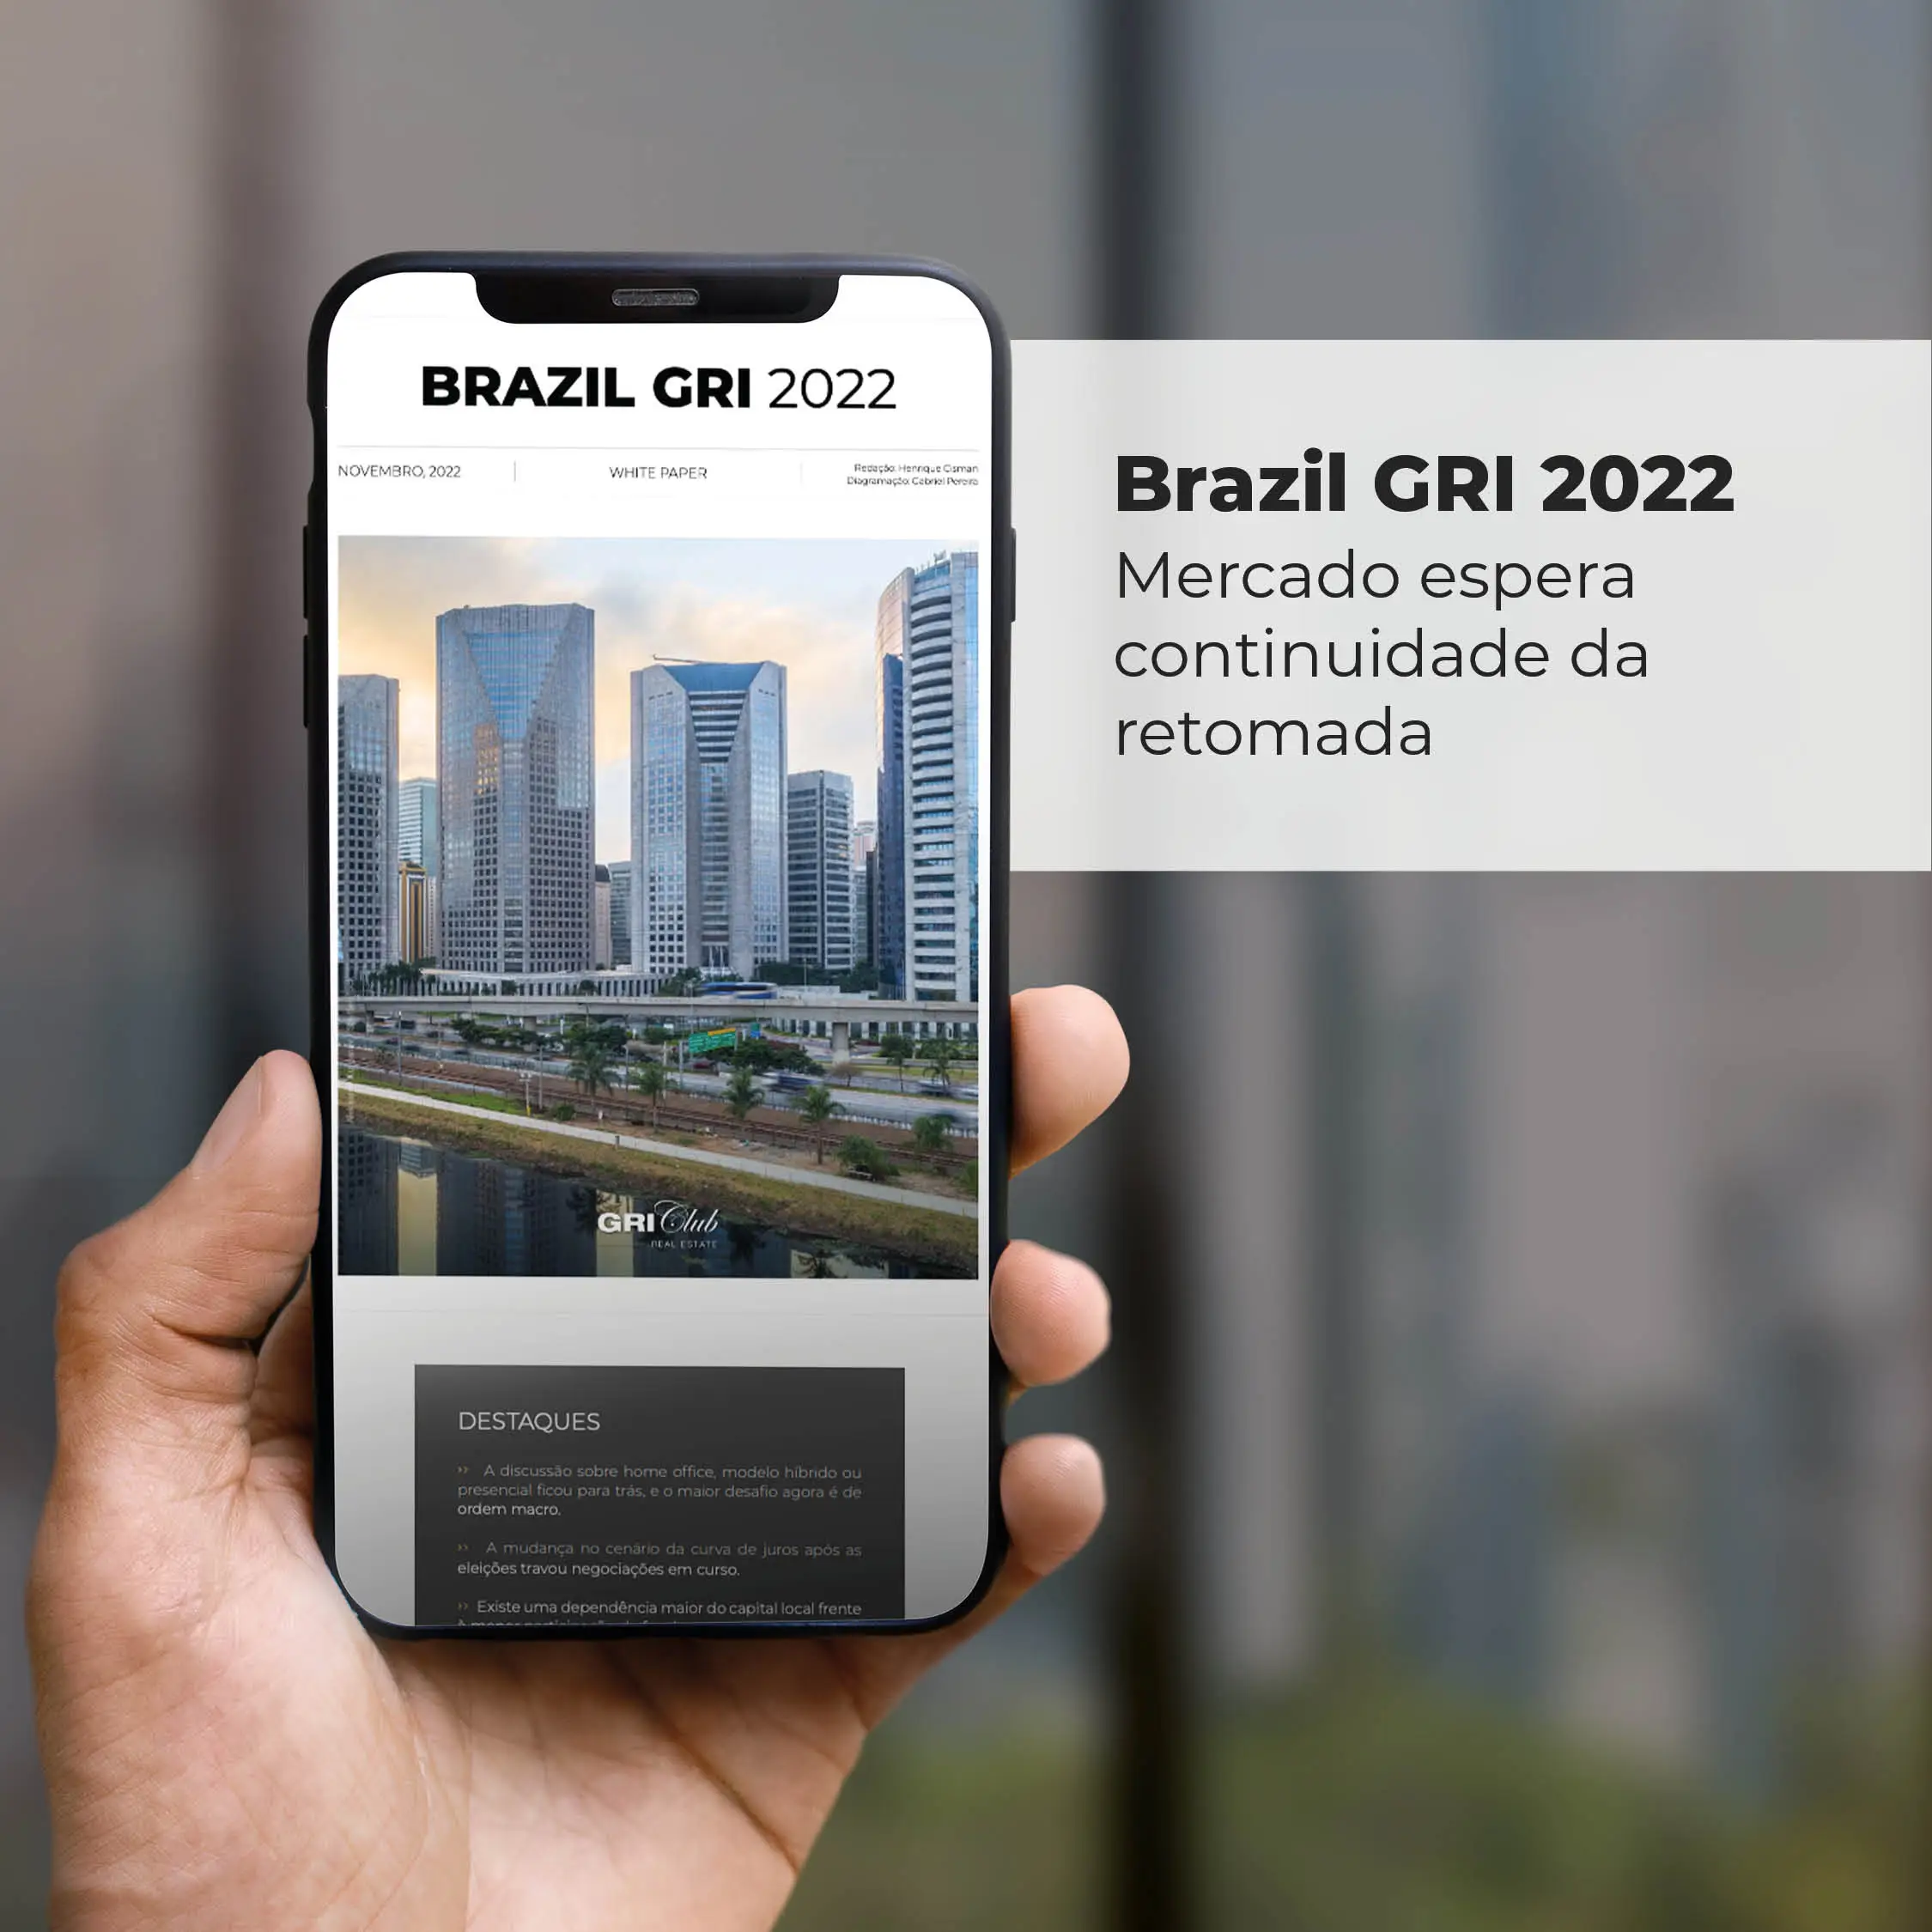  Brazil GRI 2022 Mercado espera continuidade da retomada